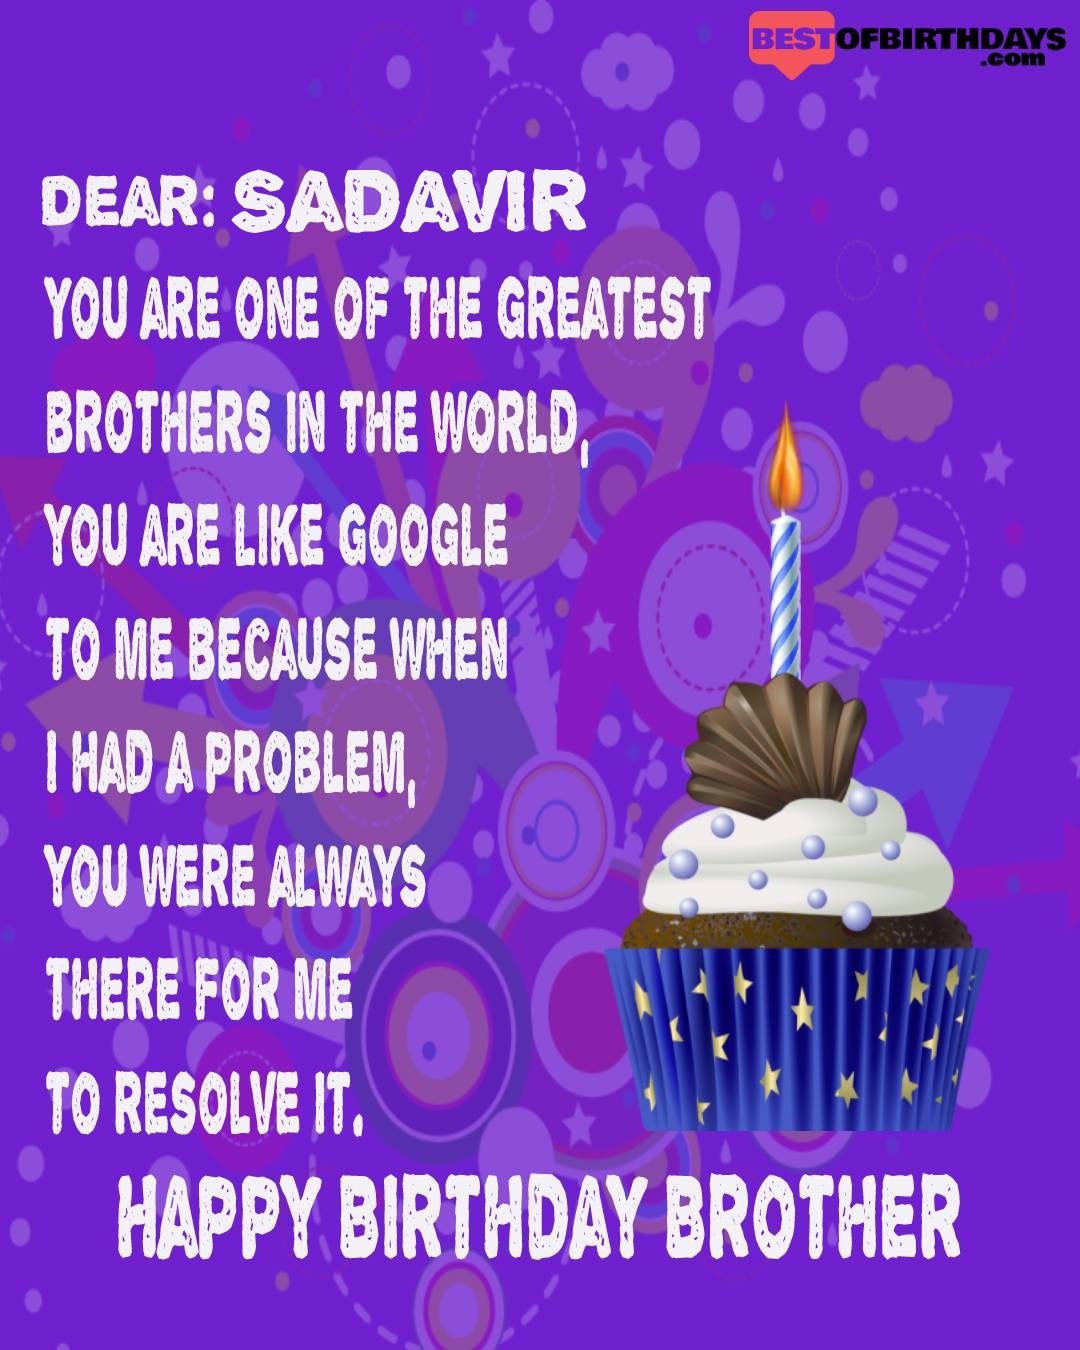 Happy birthday sadavir bhai brother bro